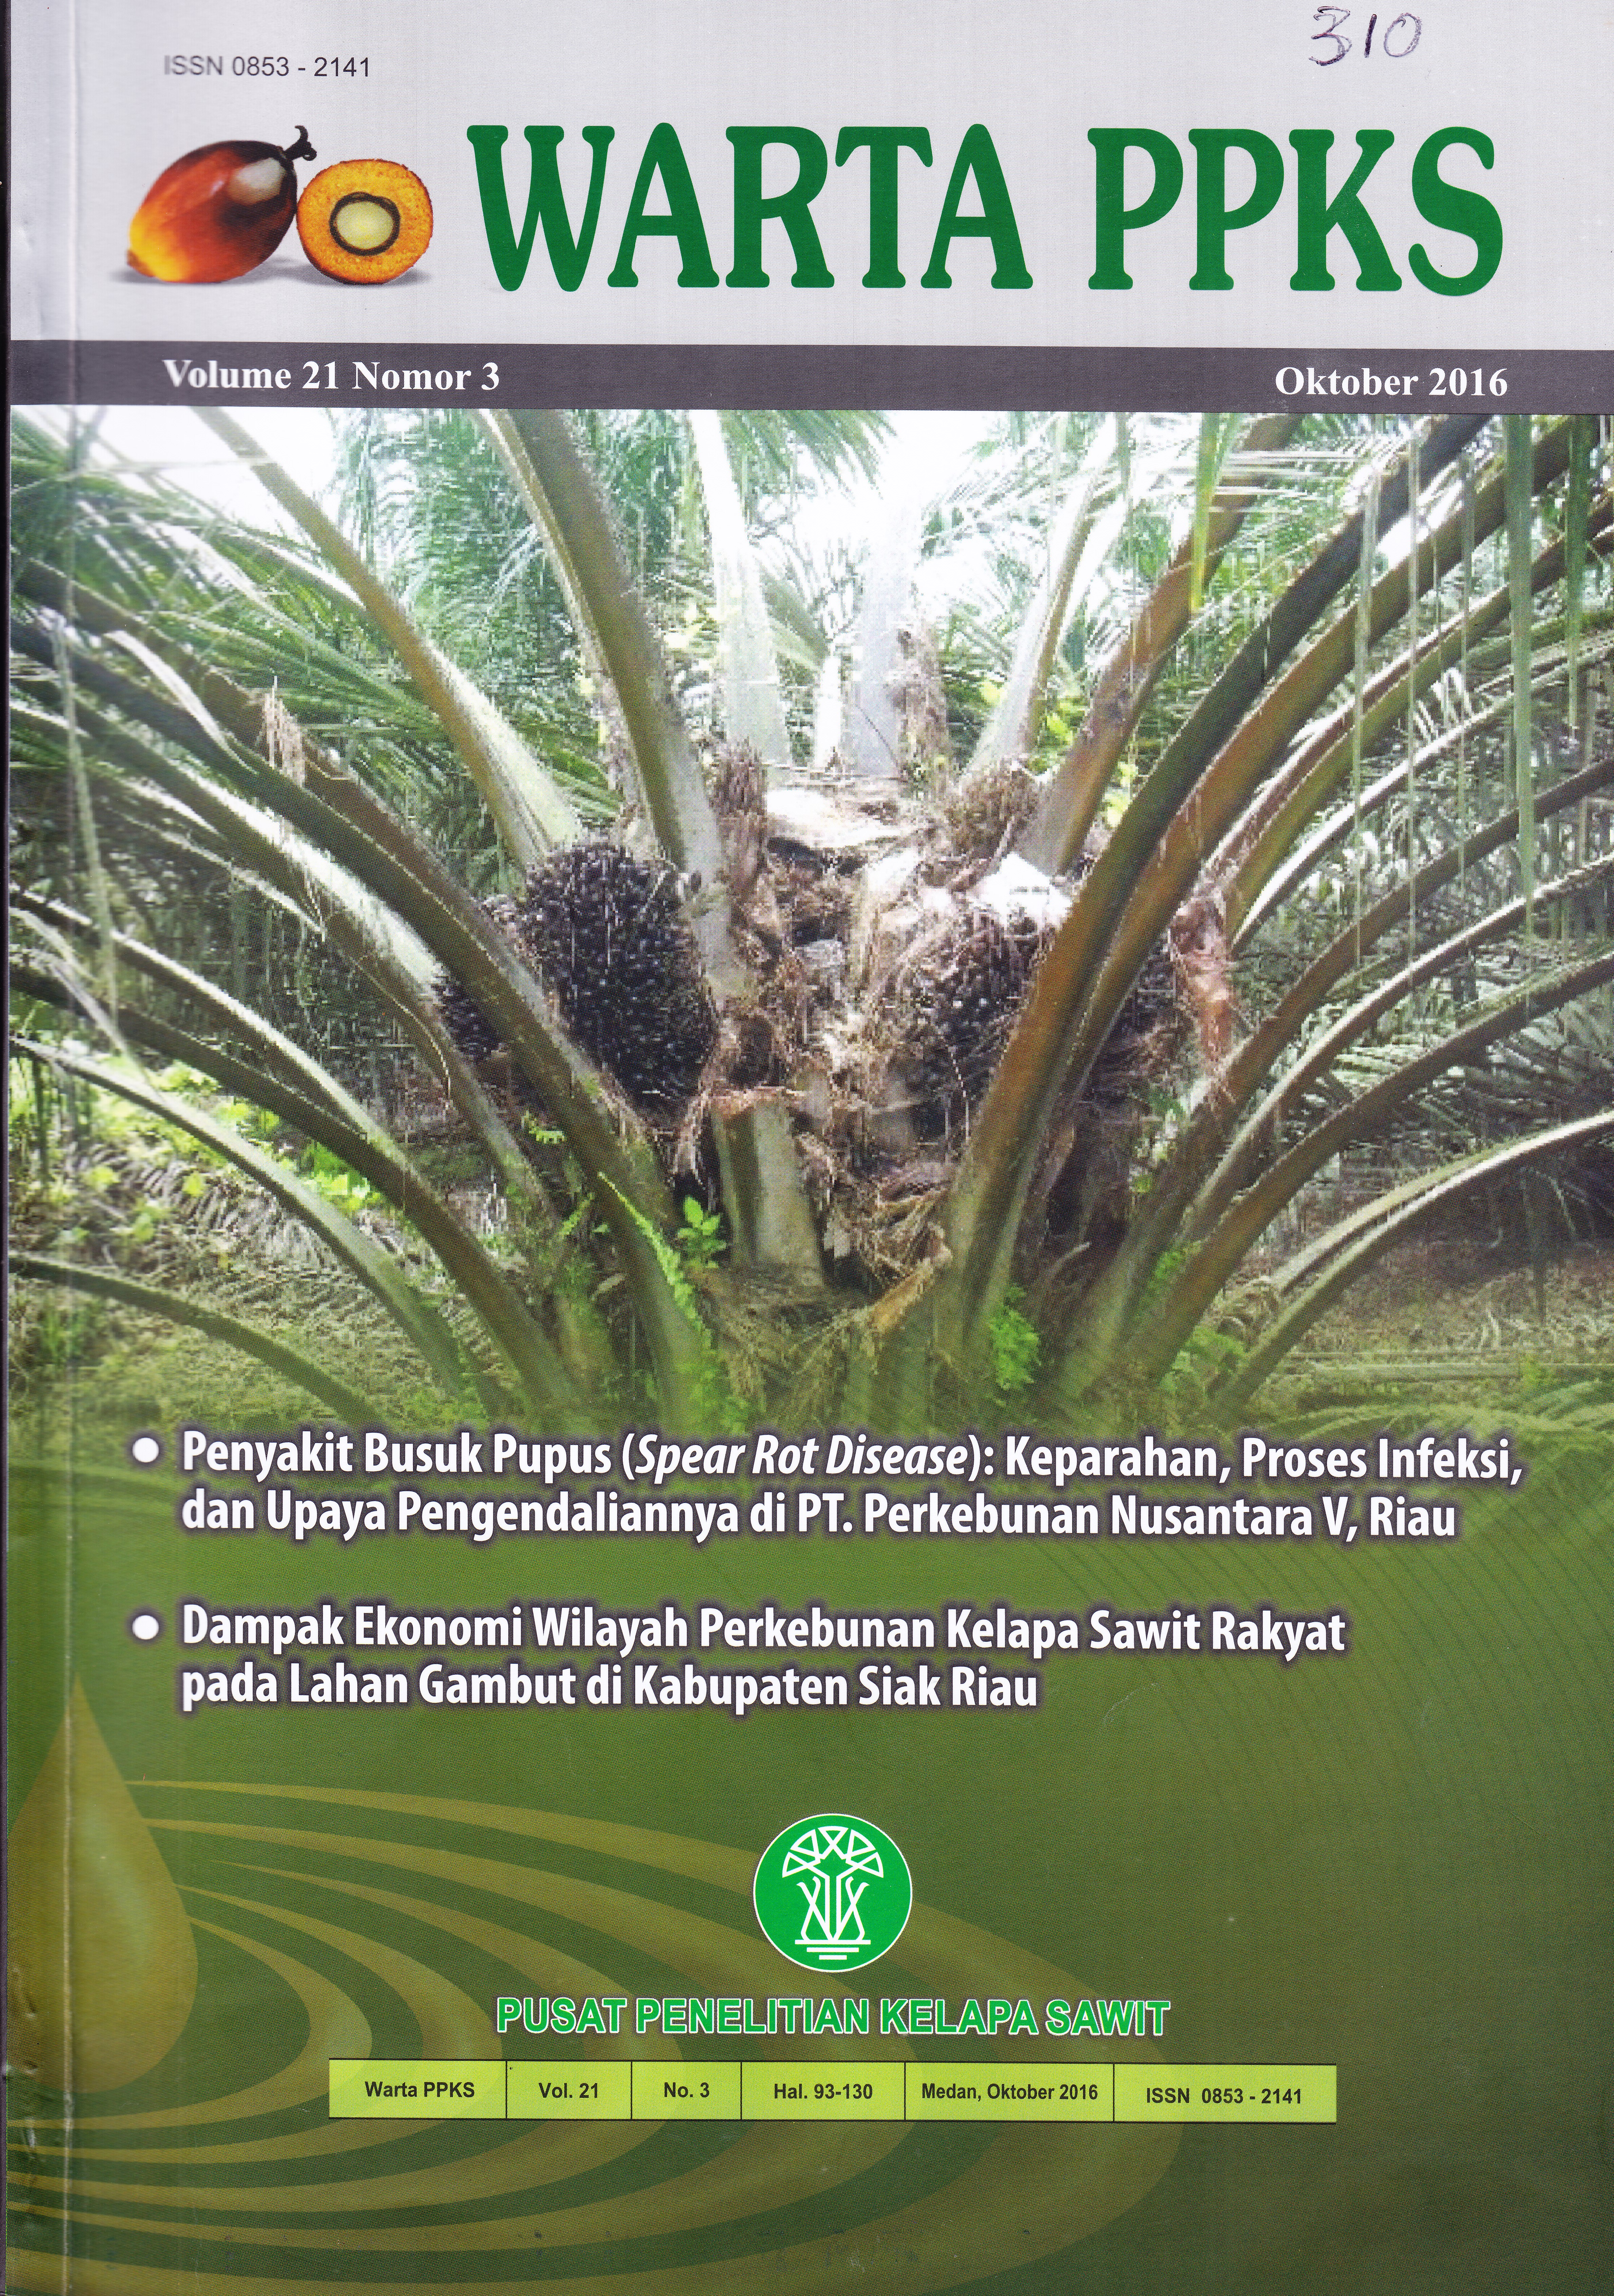 Dampak Ekonomi Wilayah Perkebunan Kelapa Sawit pada Lahan Gambut di Kabupaten Siak Riau